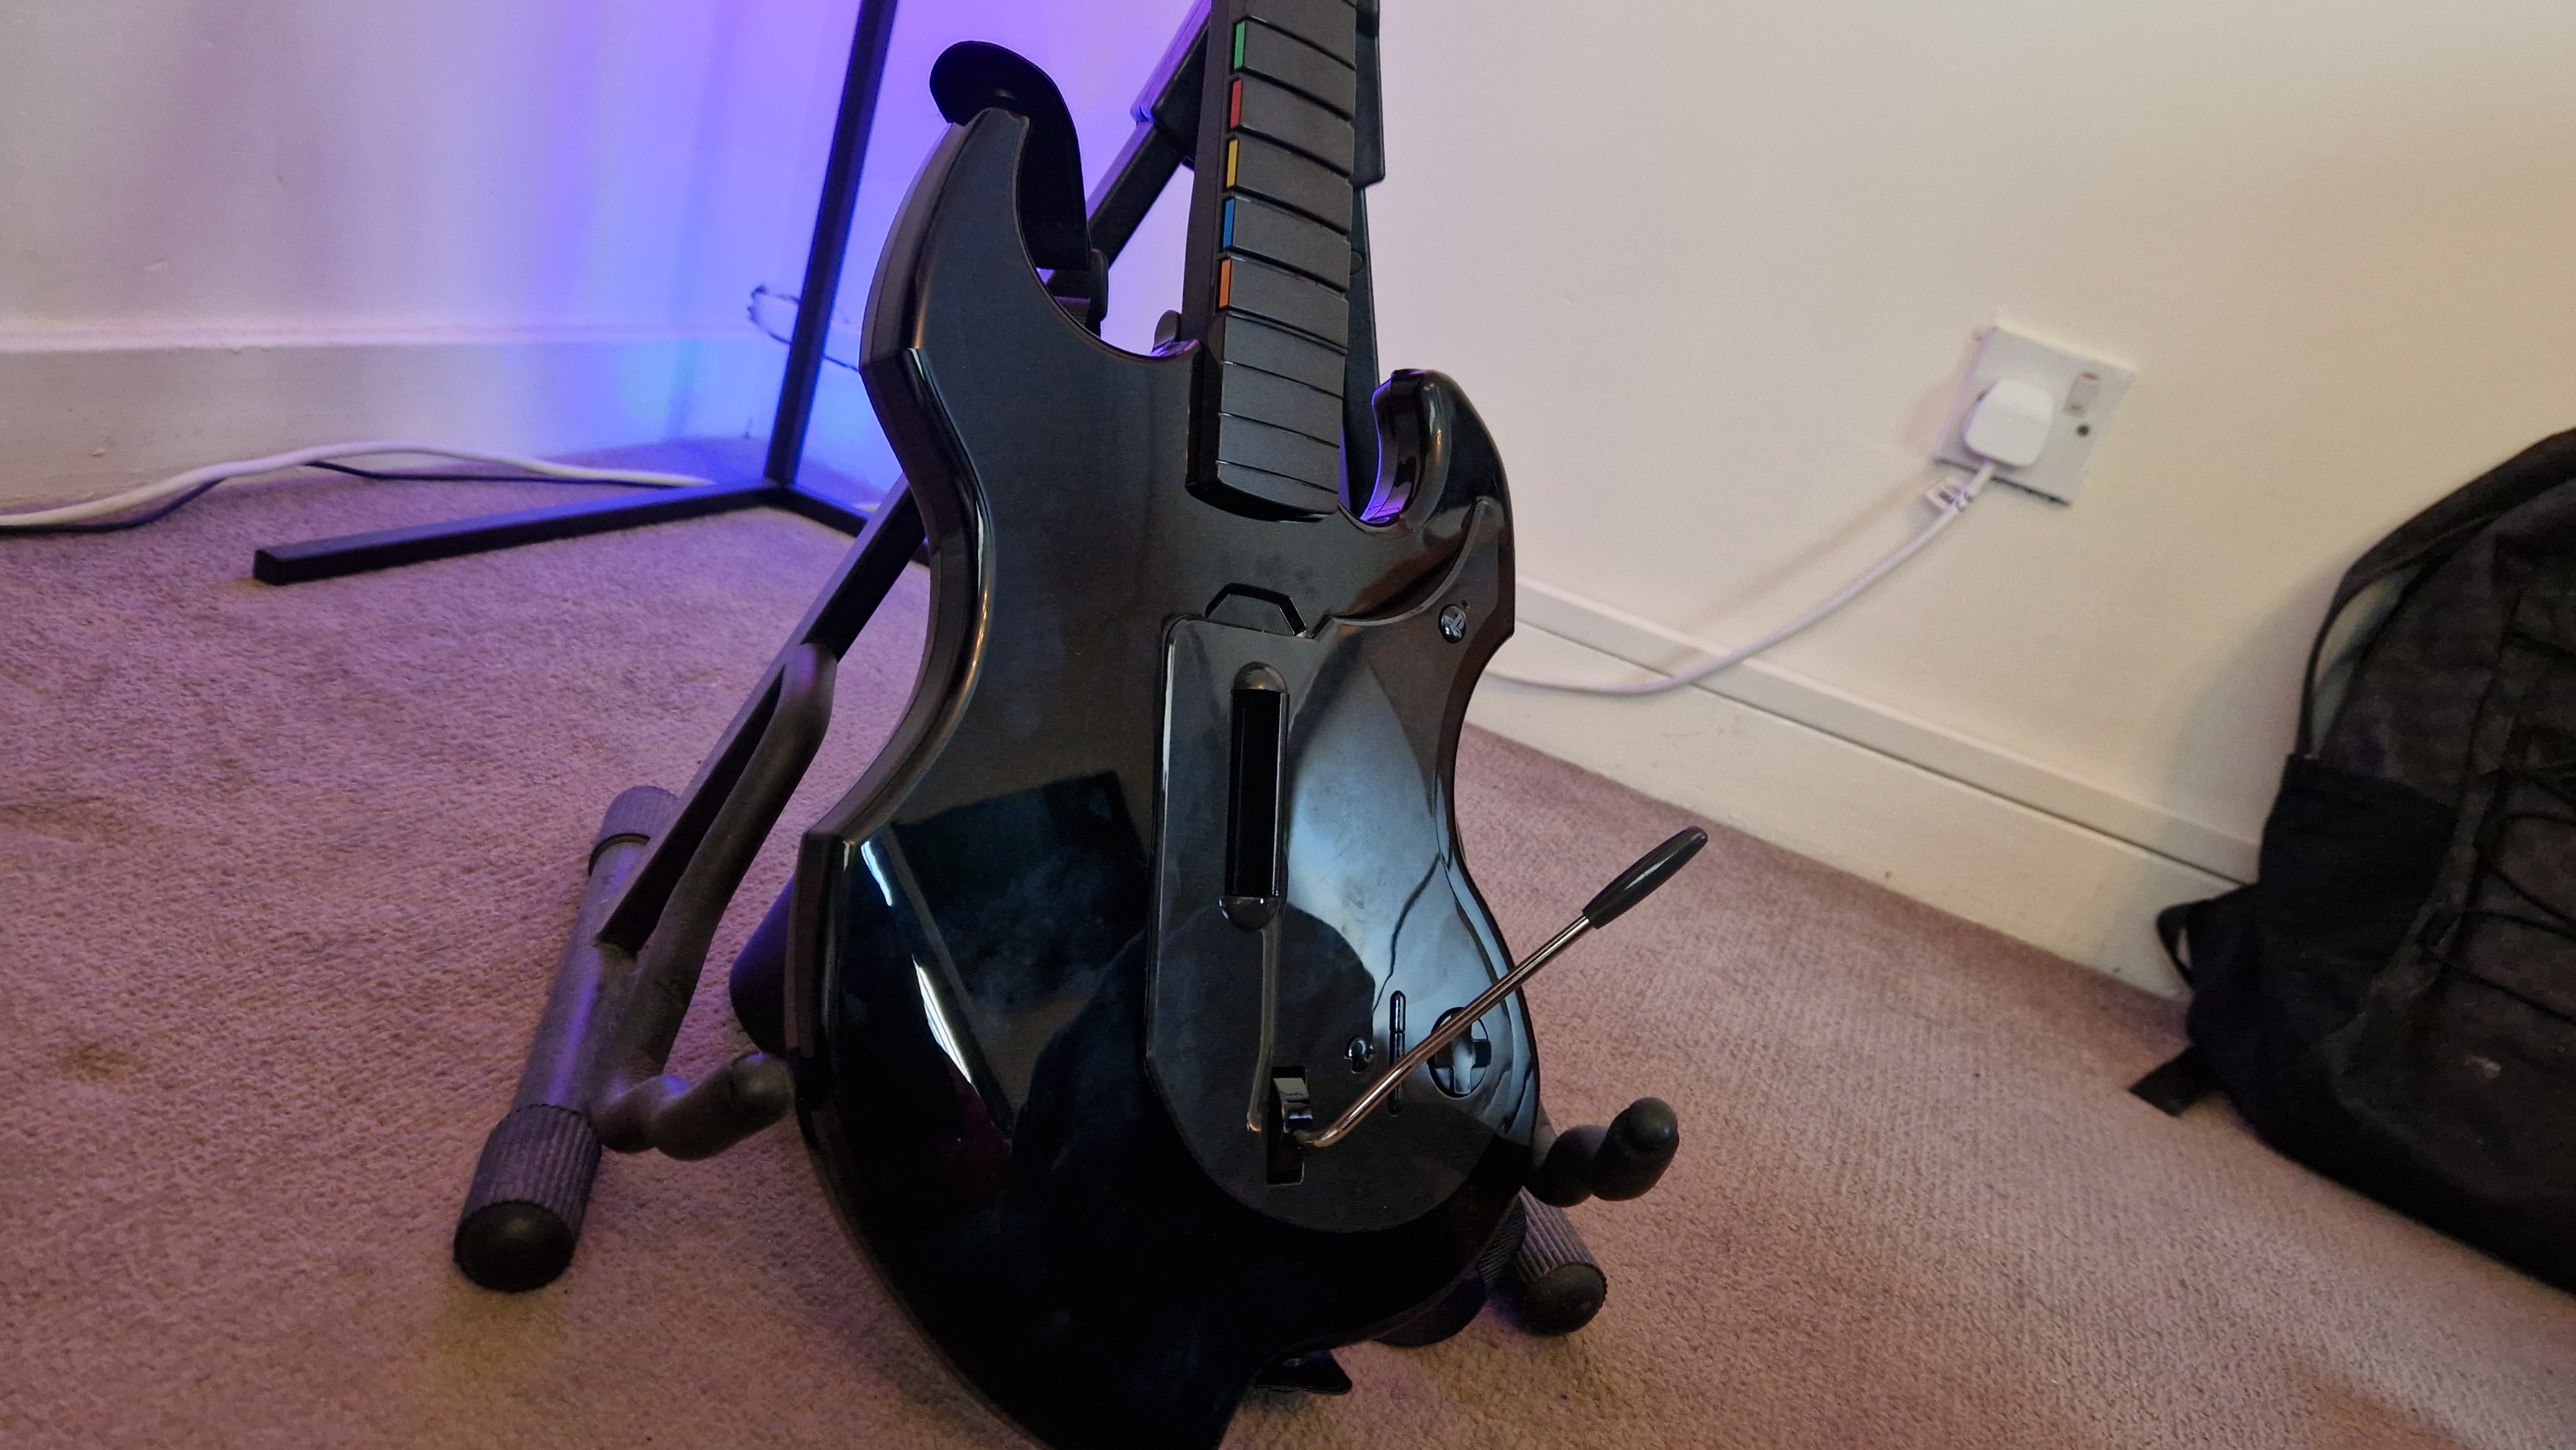 Imagem prática da PDP Riffmaster com o corpo de plástico da guitarra